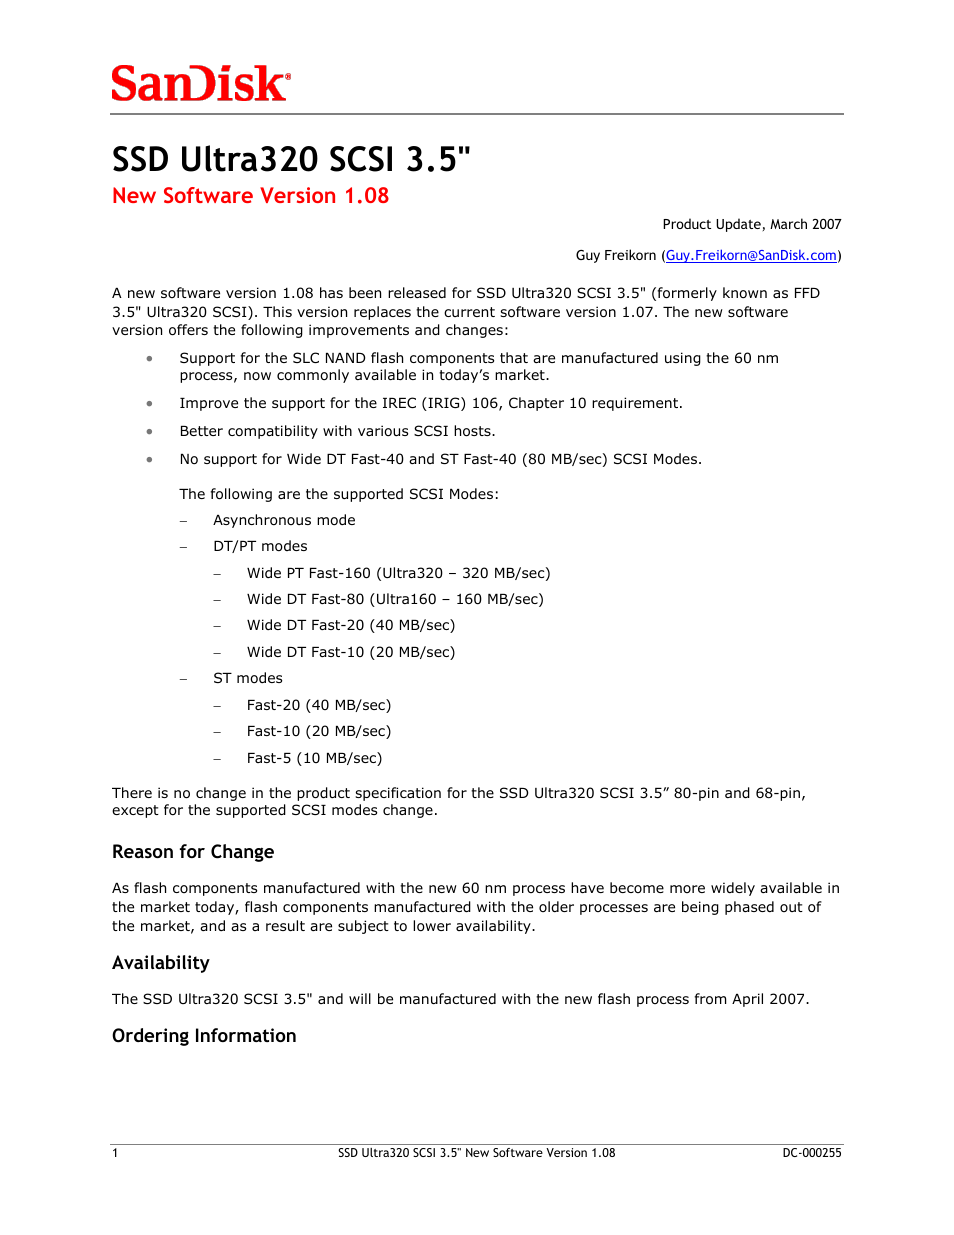 SSD ULTRA320 SCSI 3.5" DC-000255